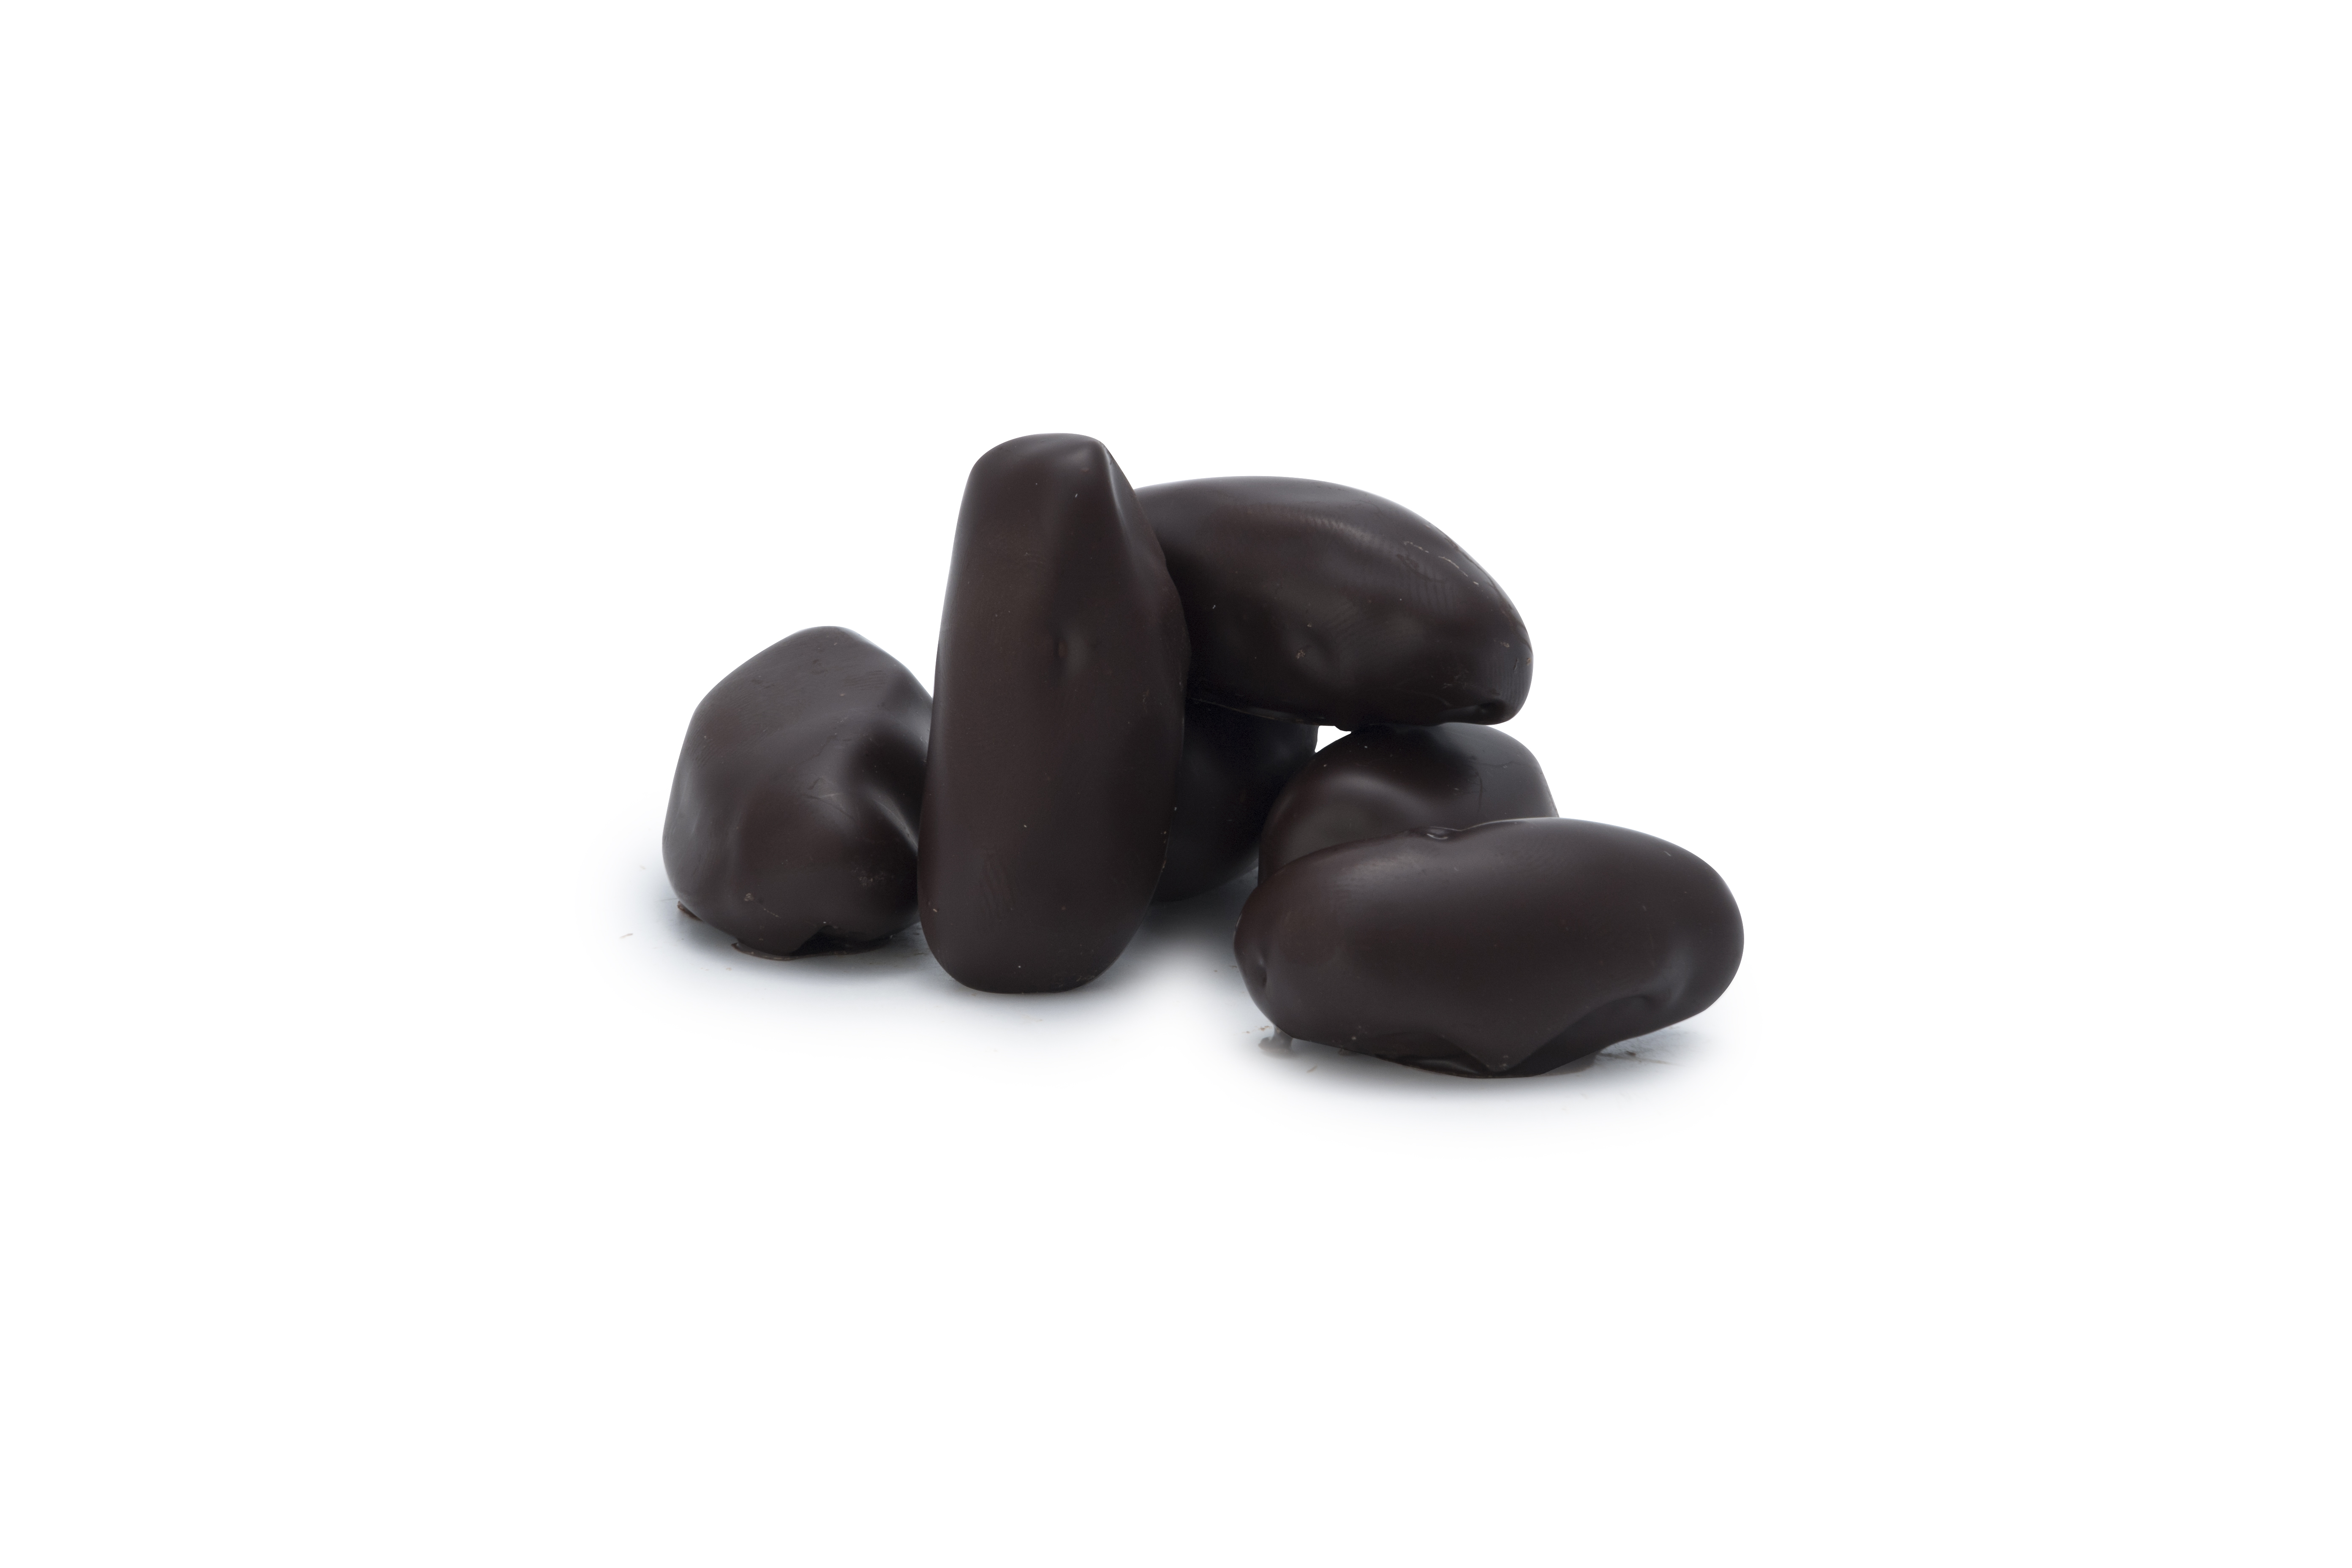 Nao Oeufs de Pâques chocolat fondant 71% vrac bio 2.5kg - 2937 - Disponible de janvier à avril